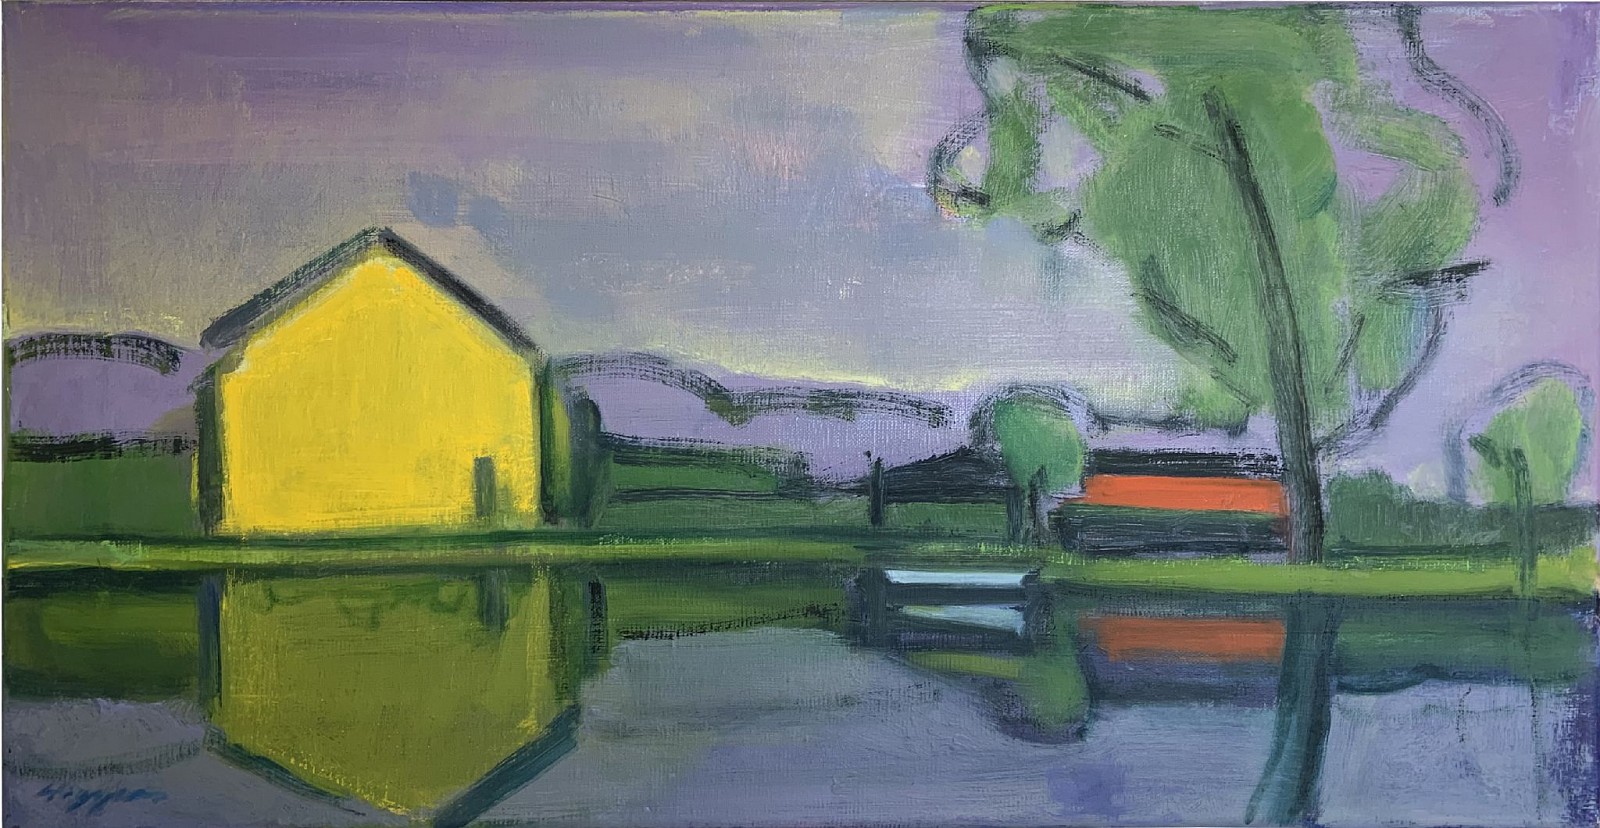 Elizabeth Higgins, Reflection, 2021
oil on canvas, 10 x 20 in. (25.4 x 50.8 cm)
EH230311